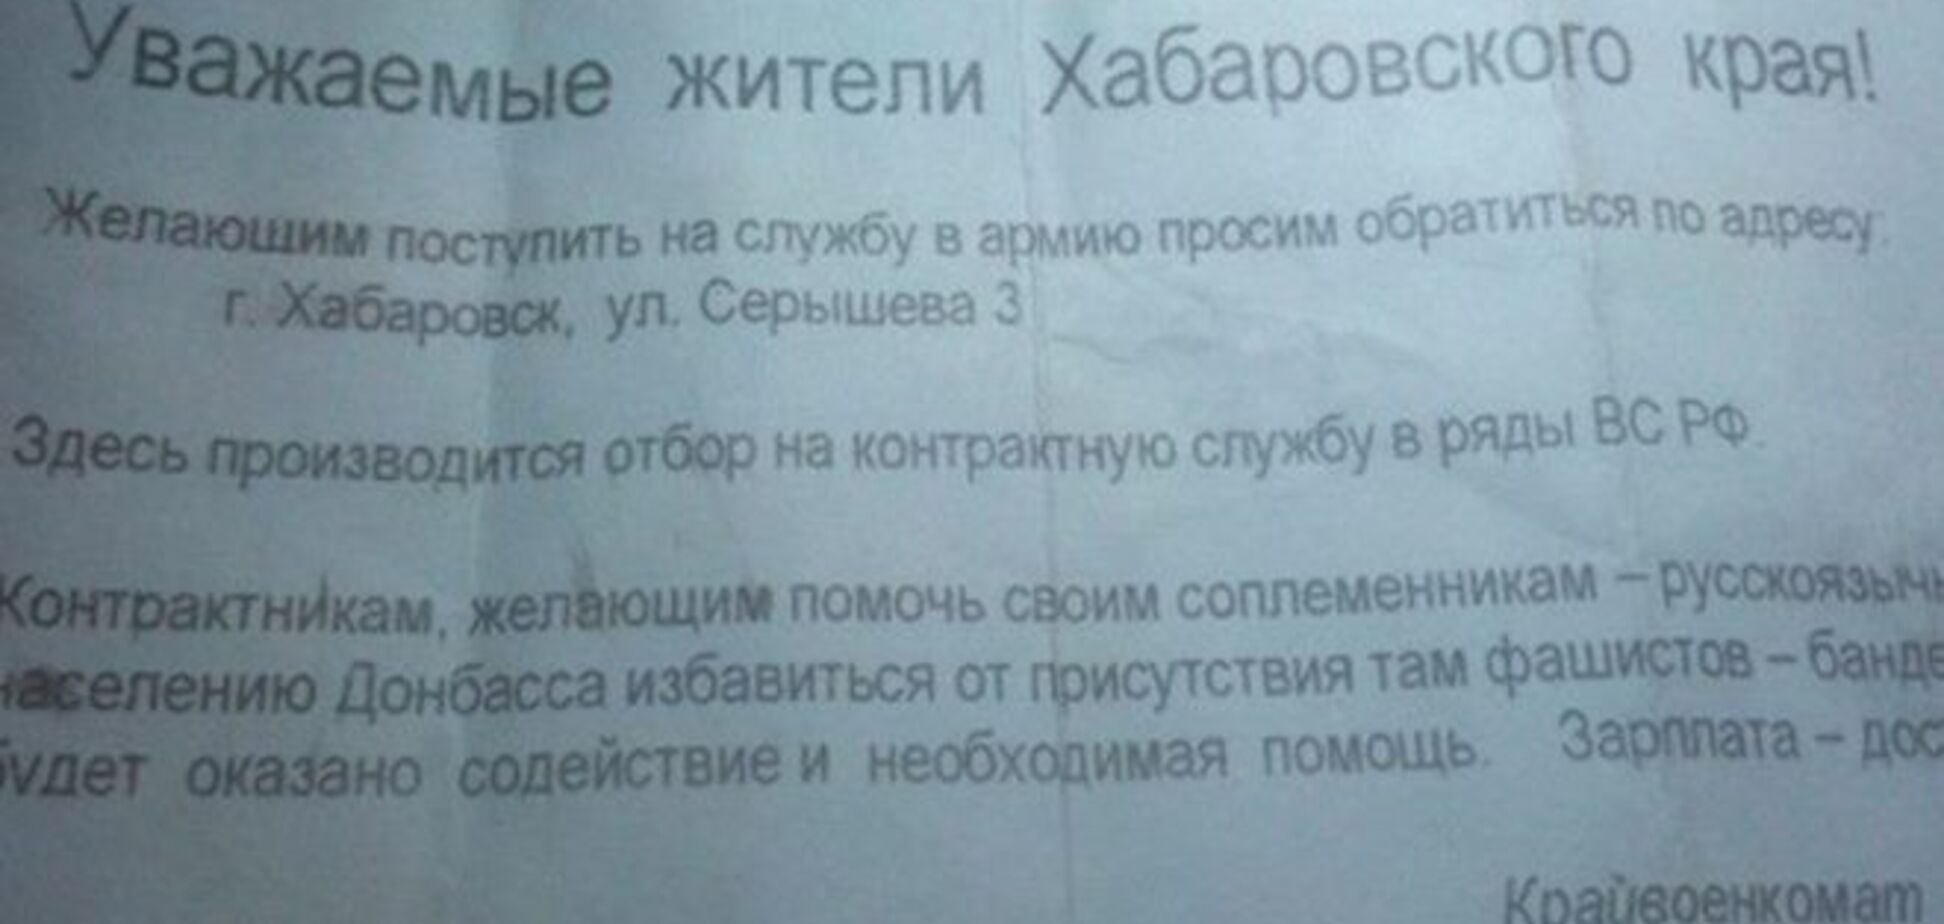 В Хабаровске приглашают контрактников помочь 'соплеменникам' на Донбассе избавиться от 'фашизма': фотофакт